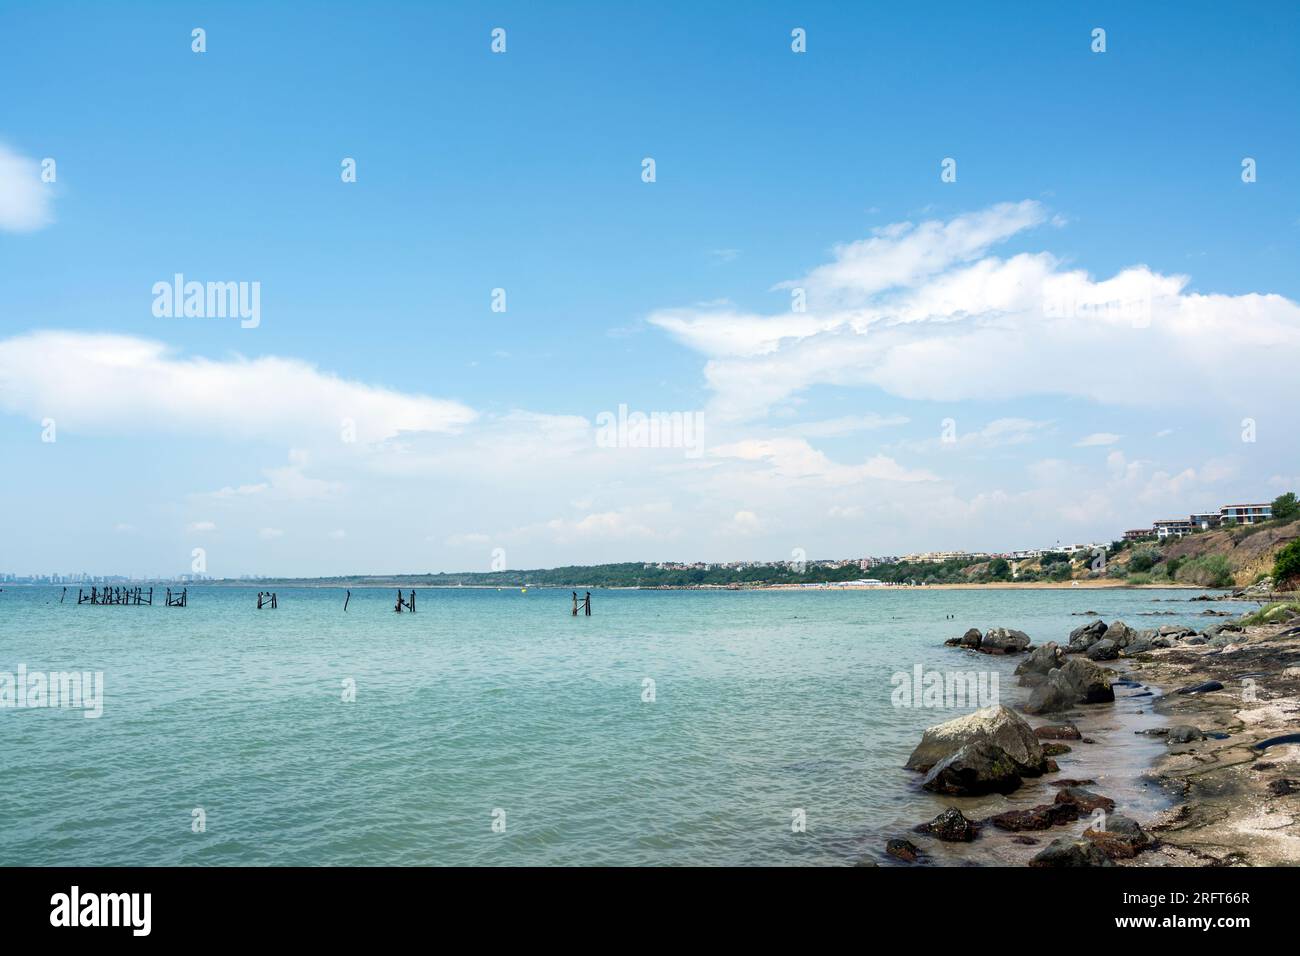 Il mare tranquillo su una spiaggia vicino a Sarafovo, Bulgaria e la sabbia nera comune nella regione di Burgas. Immagine panoramica orizzontale Foto Stock